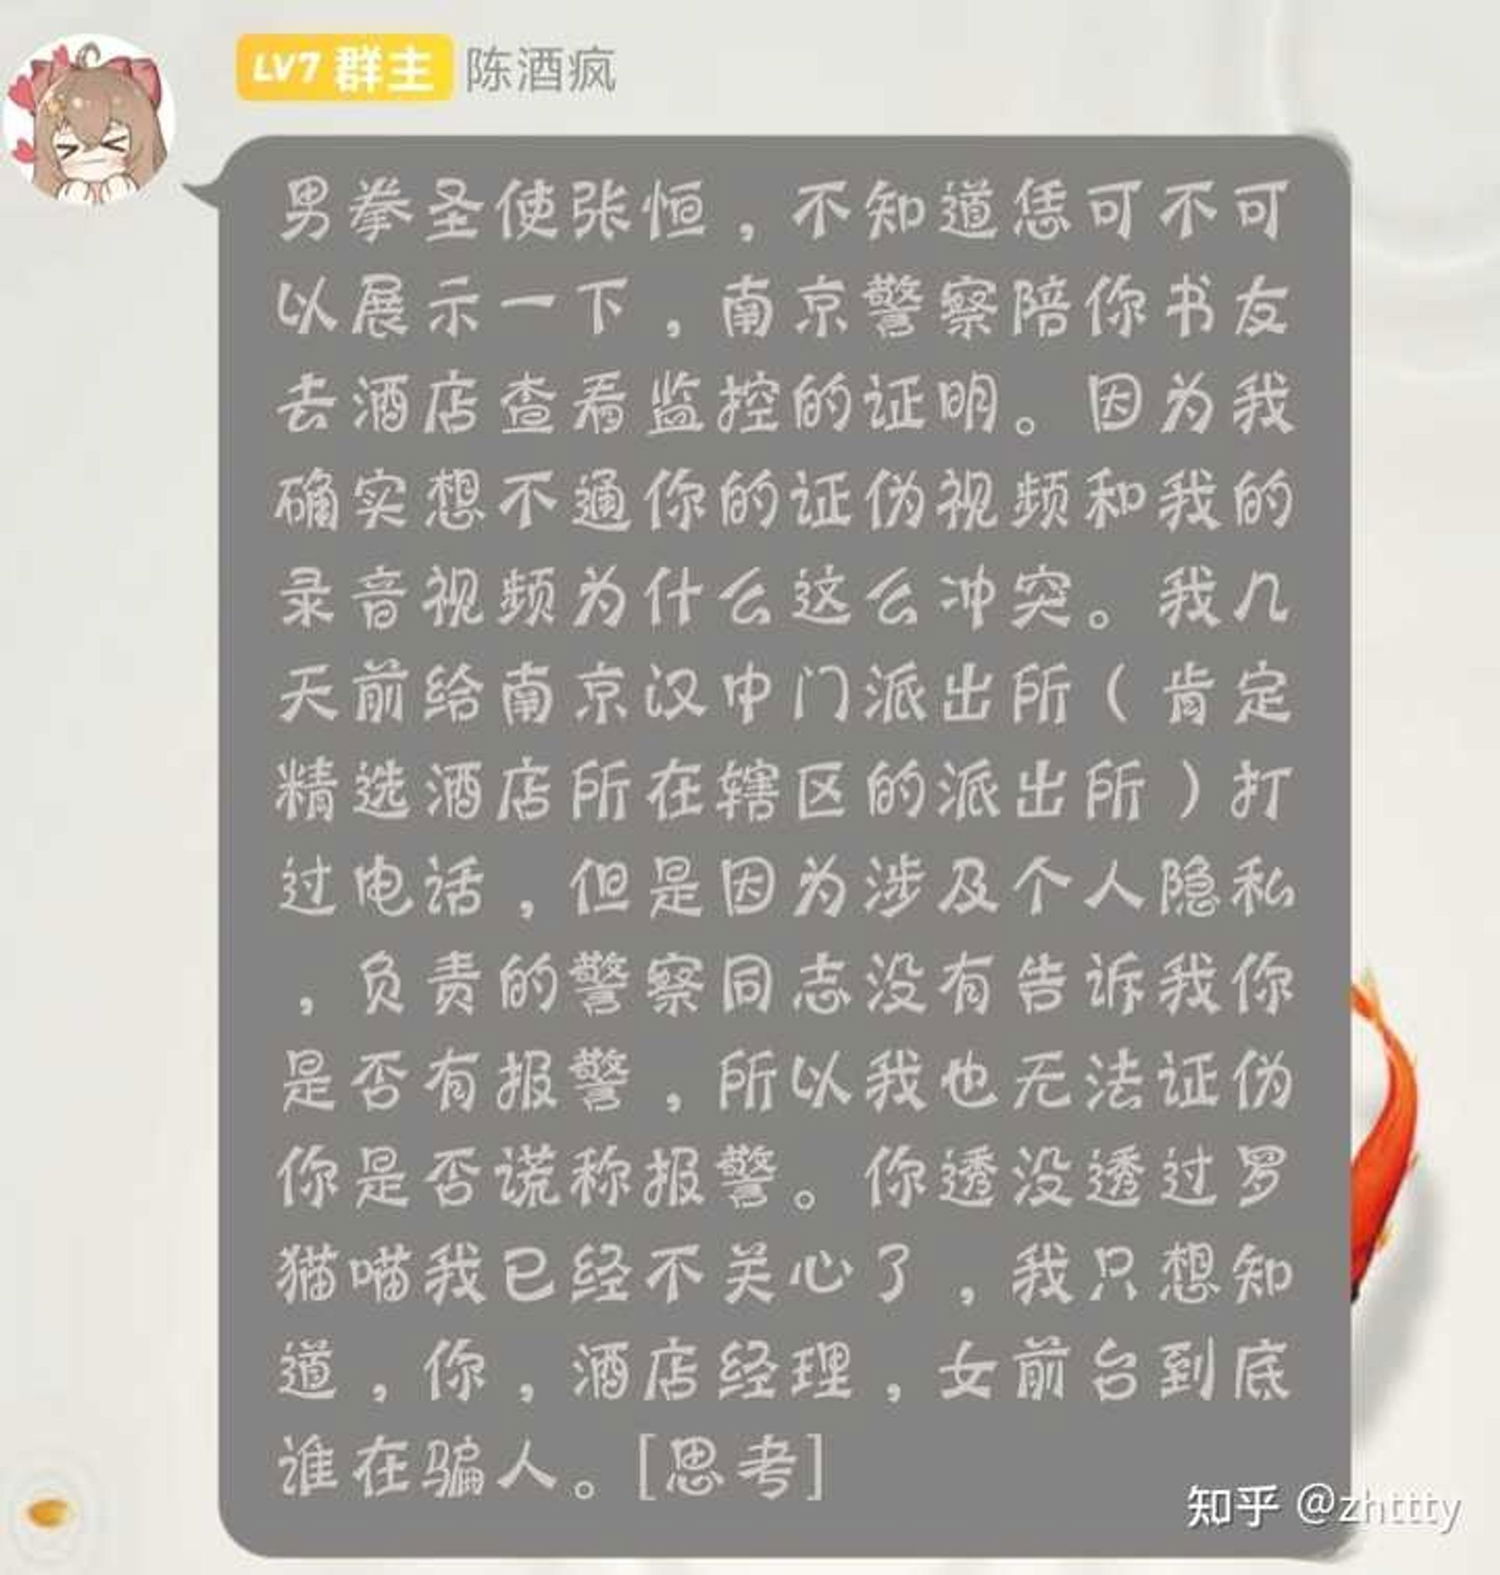 如何看待网文作家张恒(zhttty)被诬告案今日开庭？